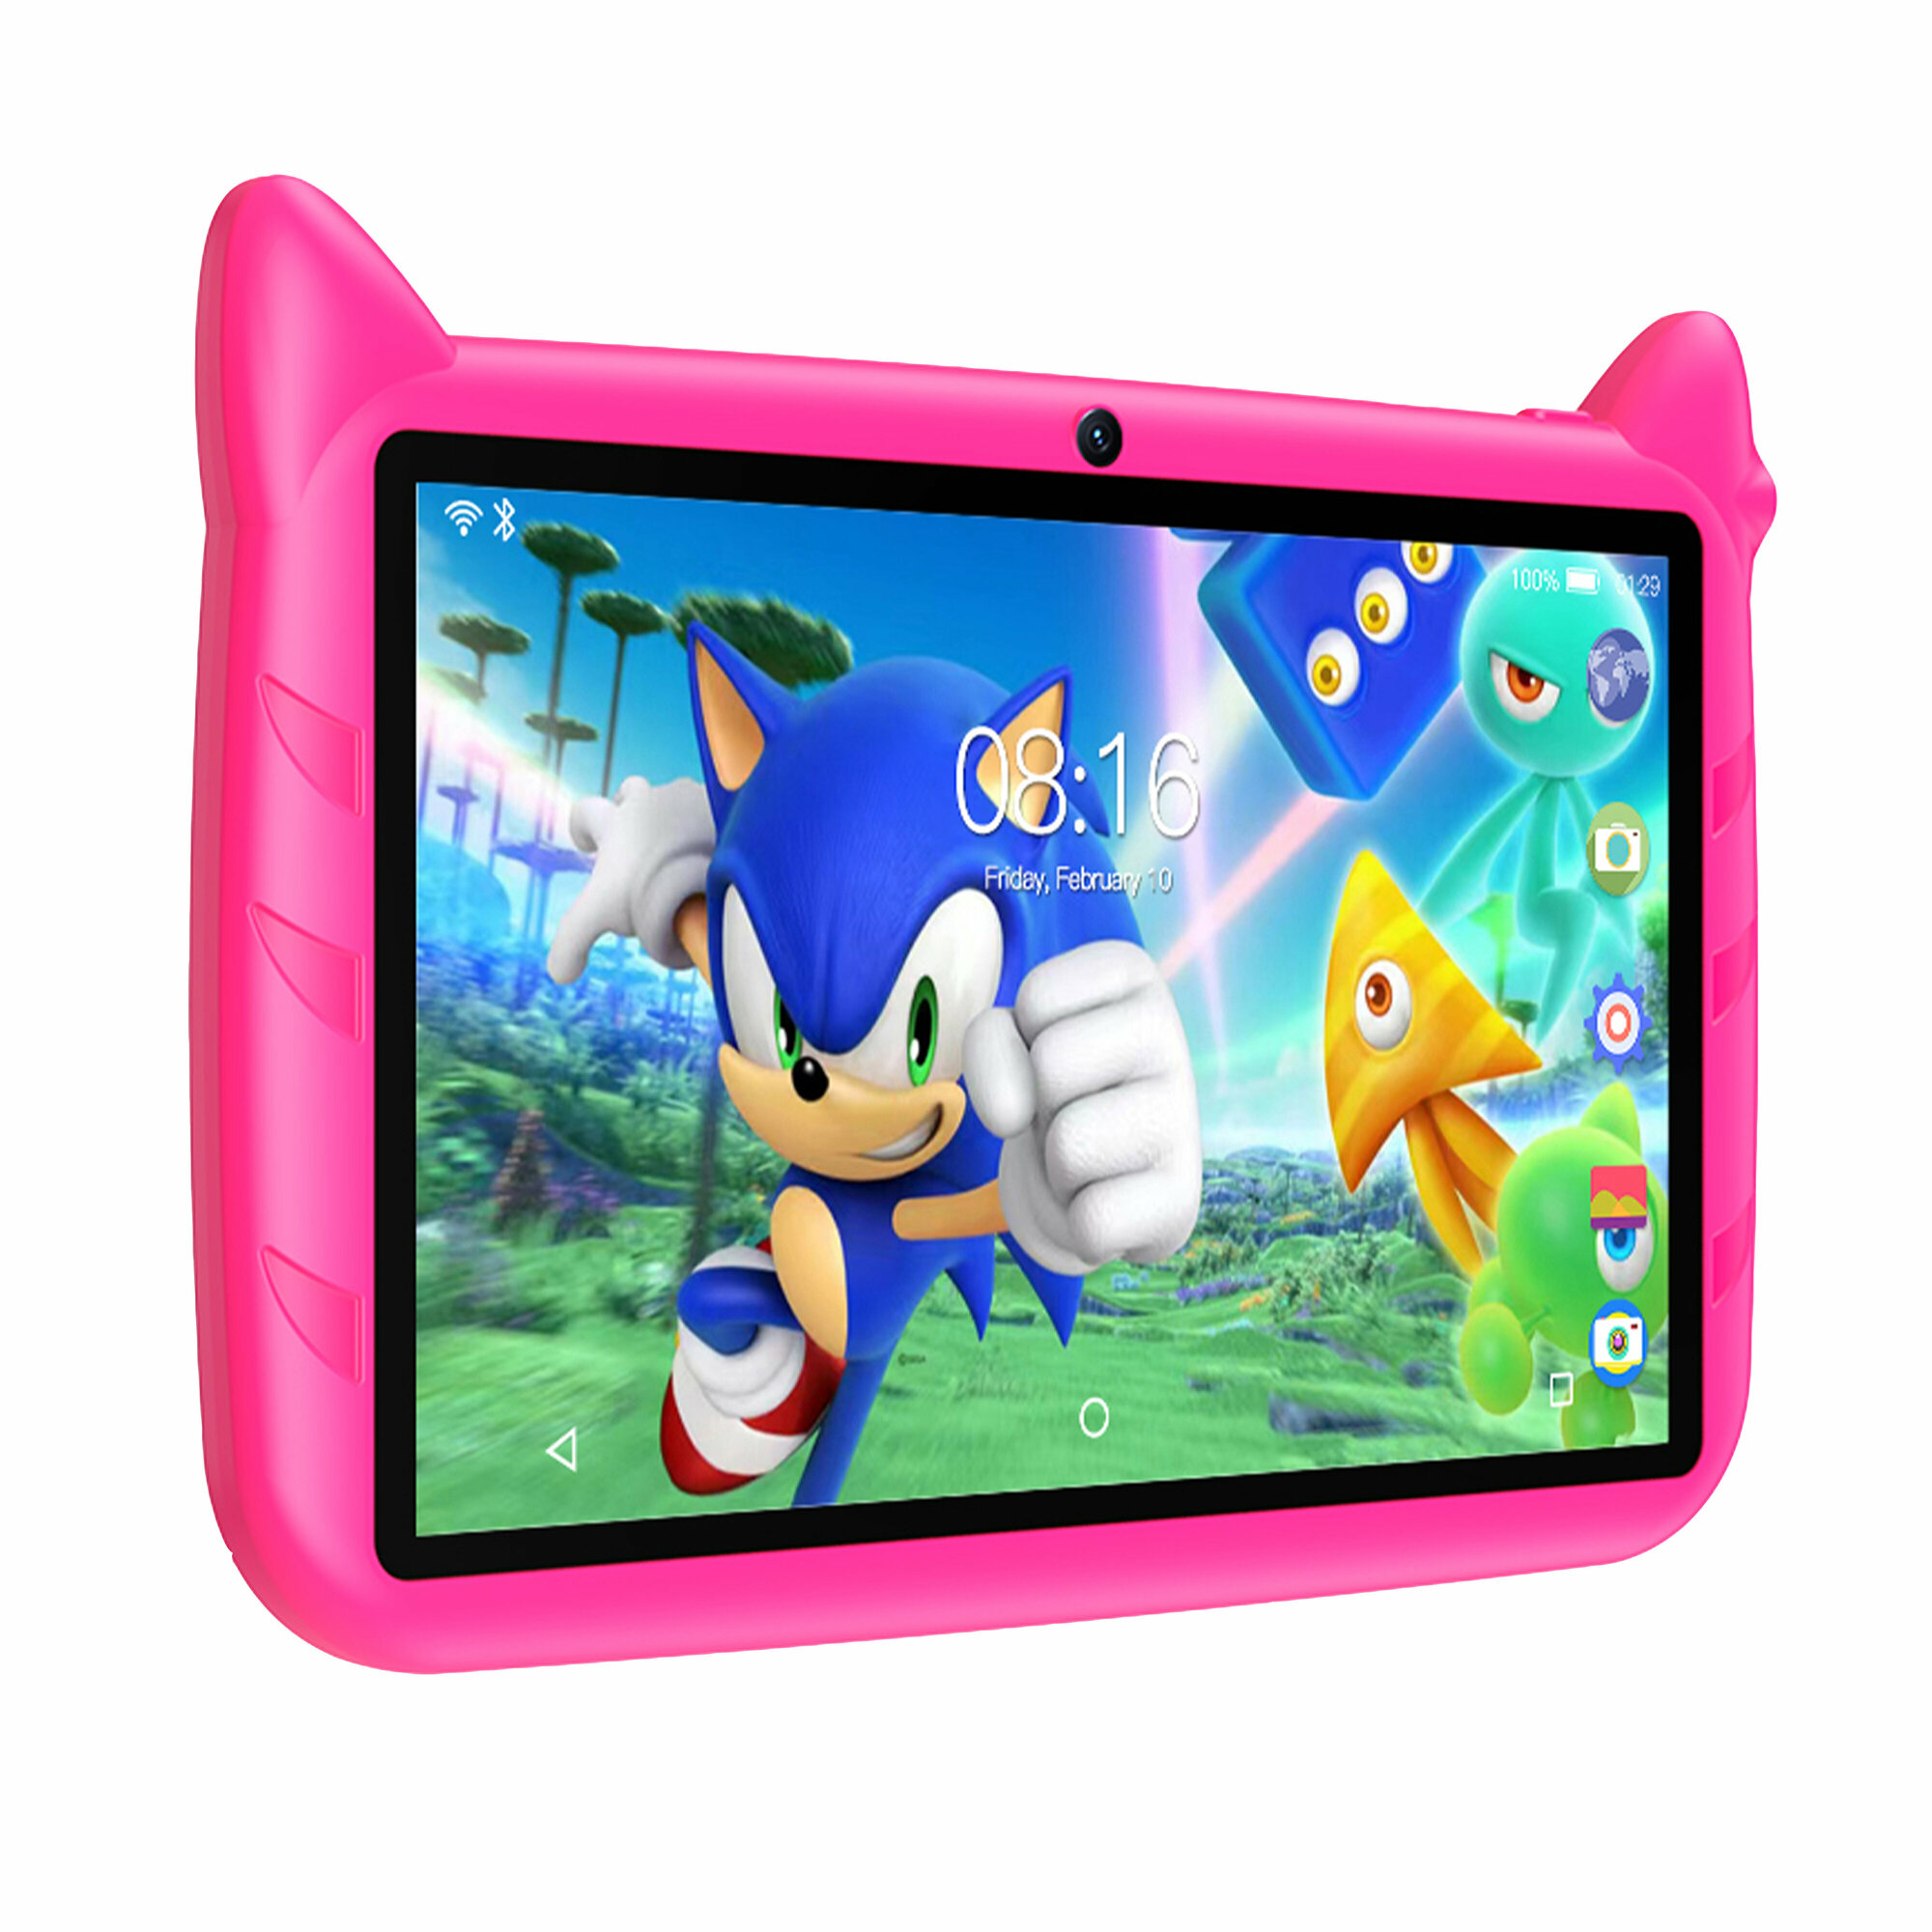 Развивающий планшет для детей на Android с 7-дюймовым экраном и Wi-Fi - Sonic Q80 2+32GB оригинал